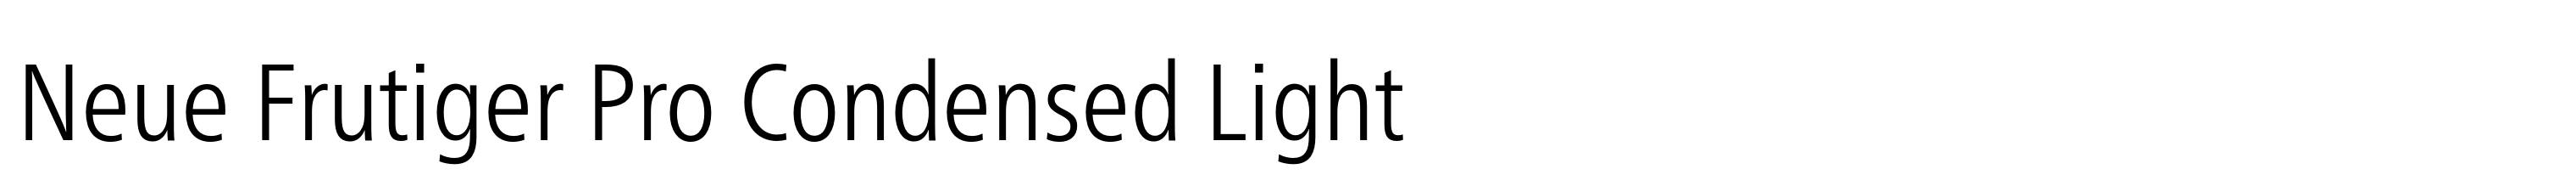 Neue Frutiger Pro Condensed Light